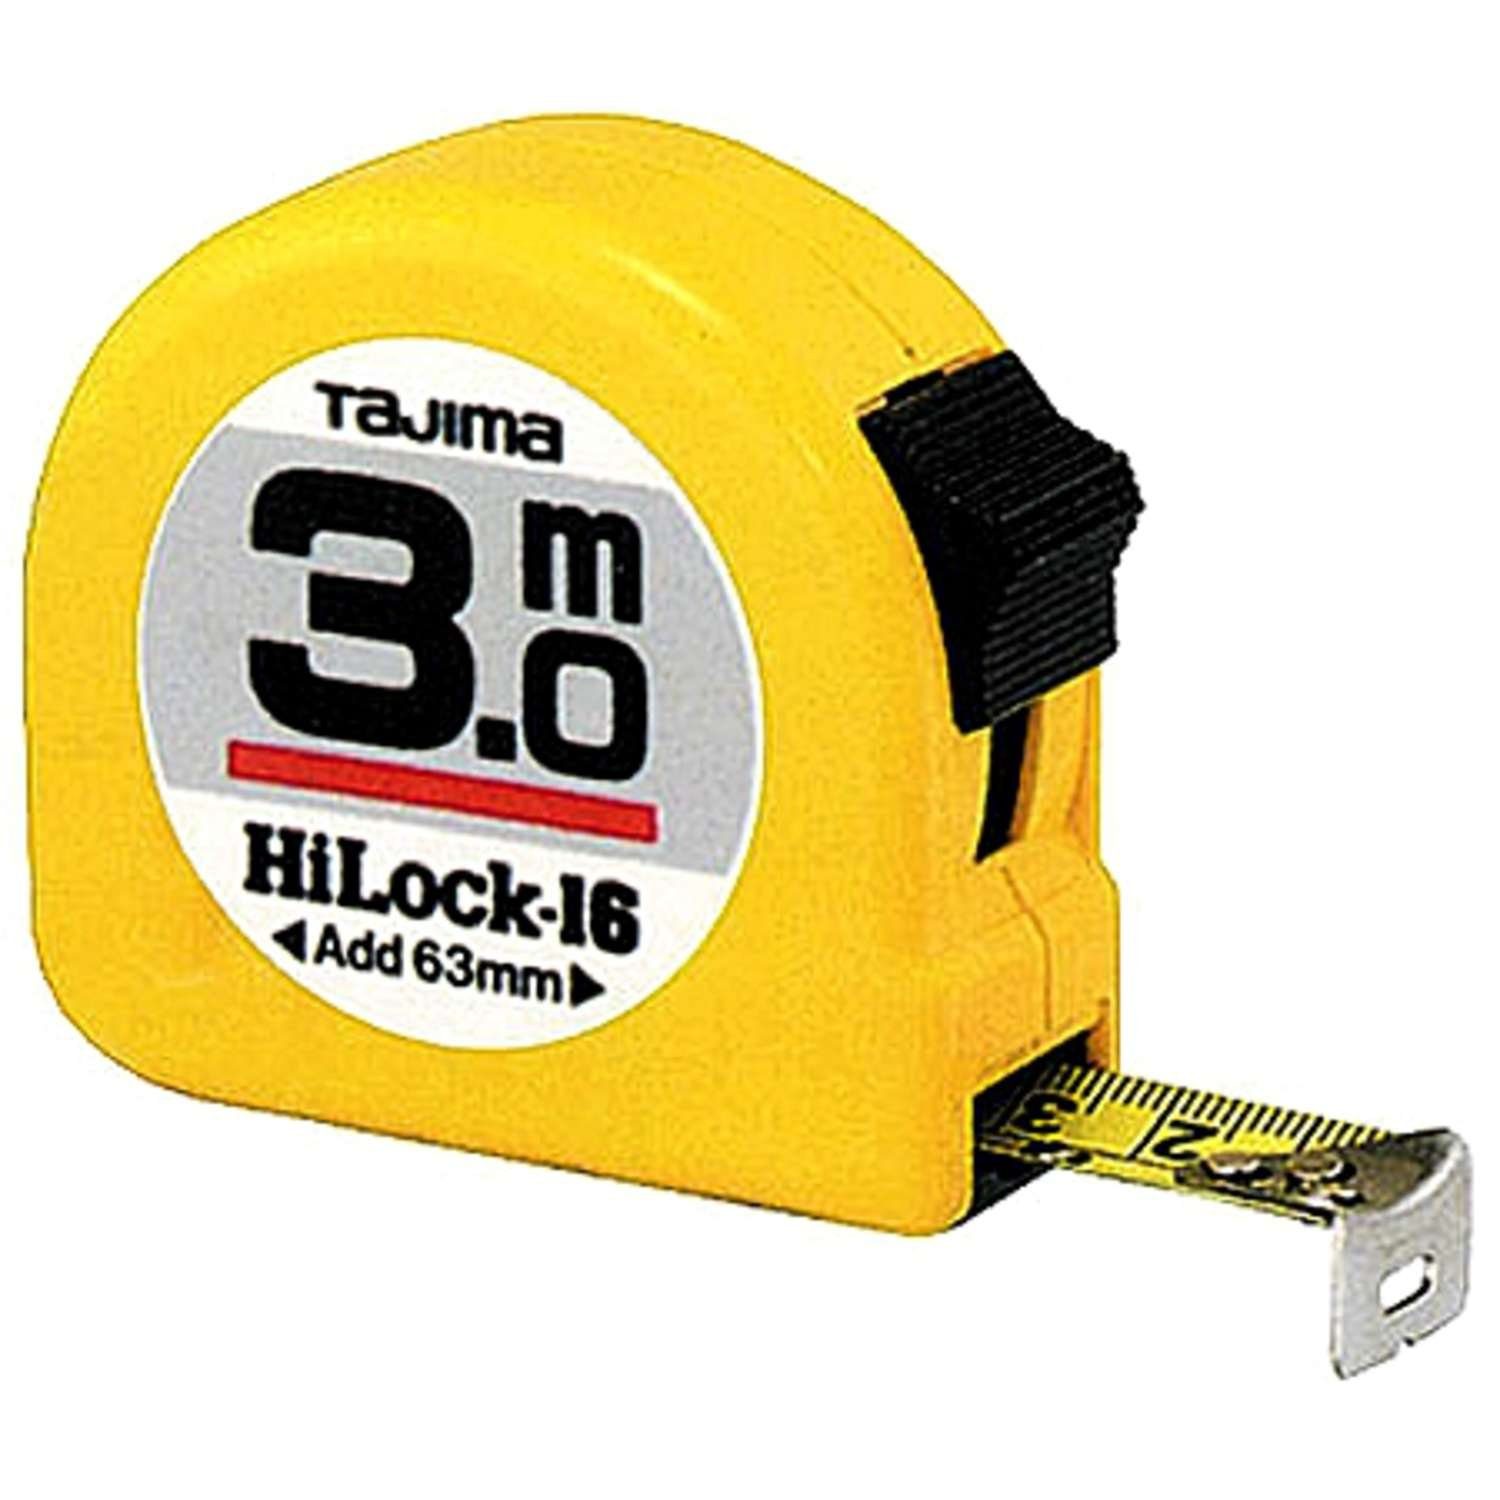 Bandmass HI-LOCK Maßband gelb, 3m/16mm Tajima TAJIMA TAJ-10742